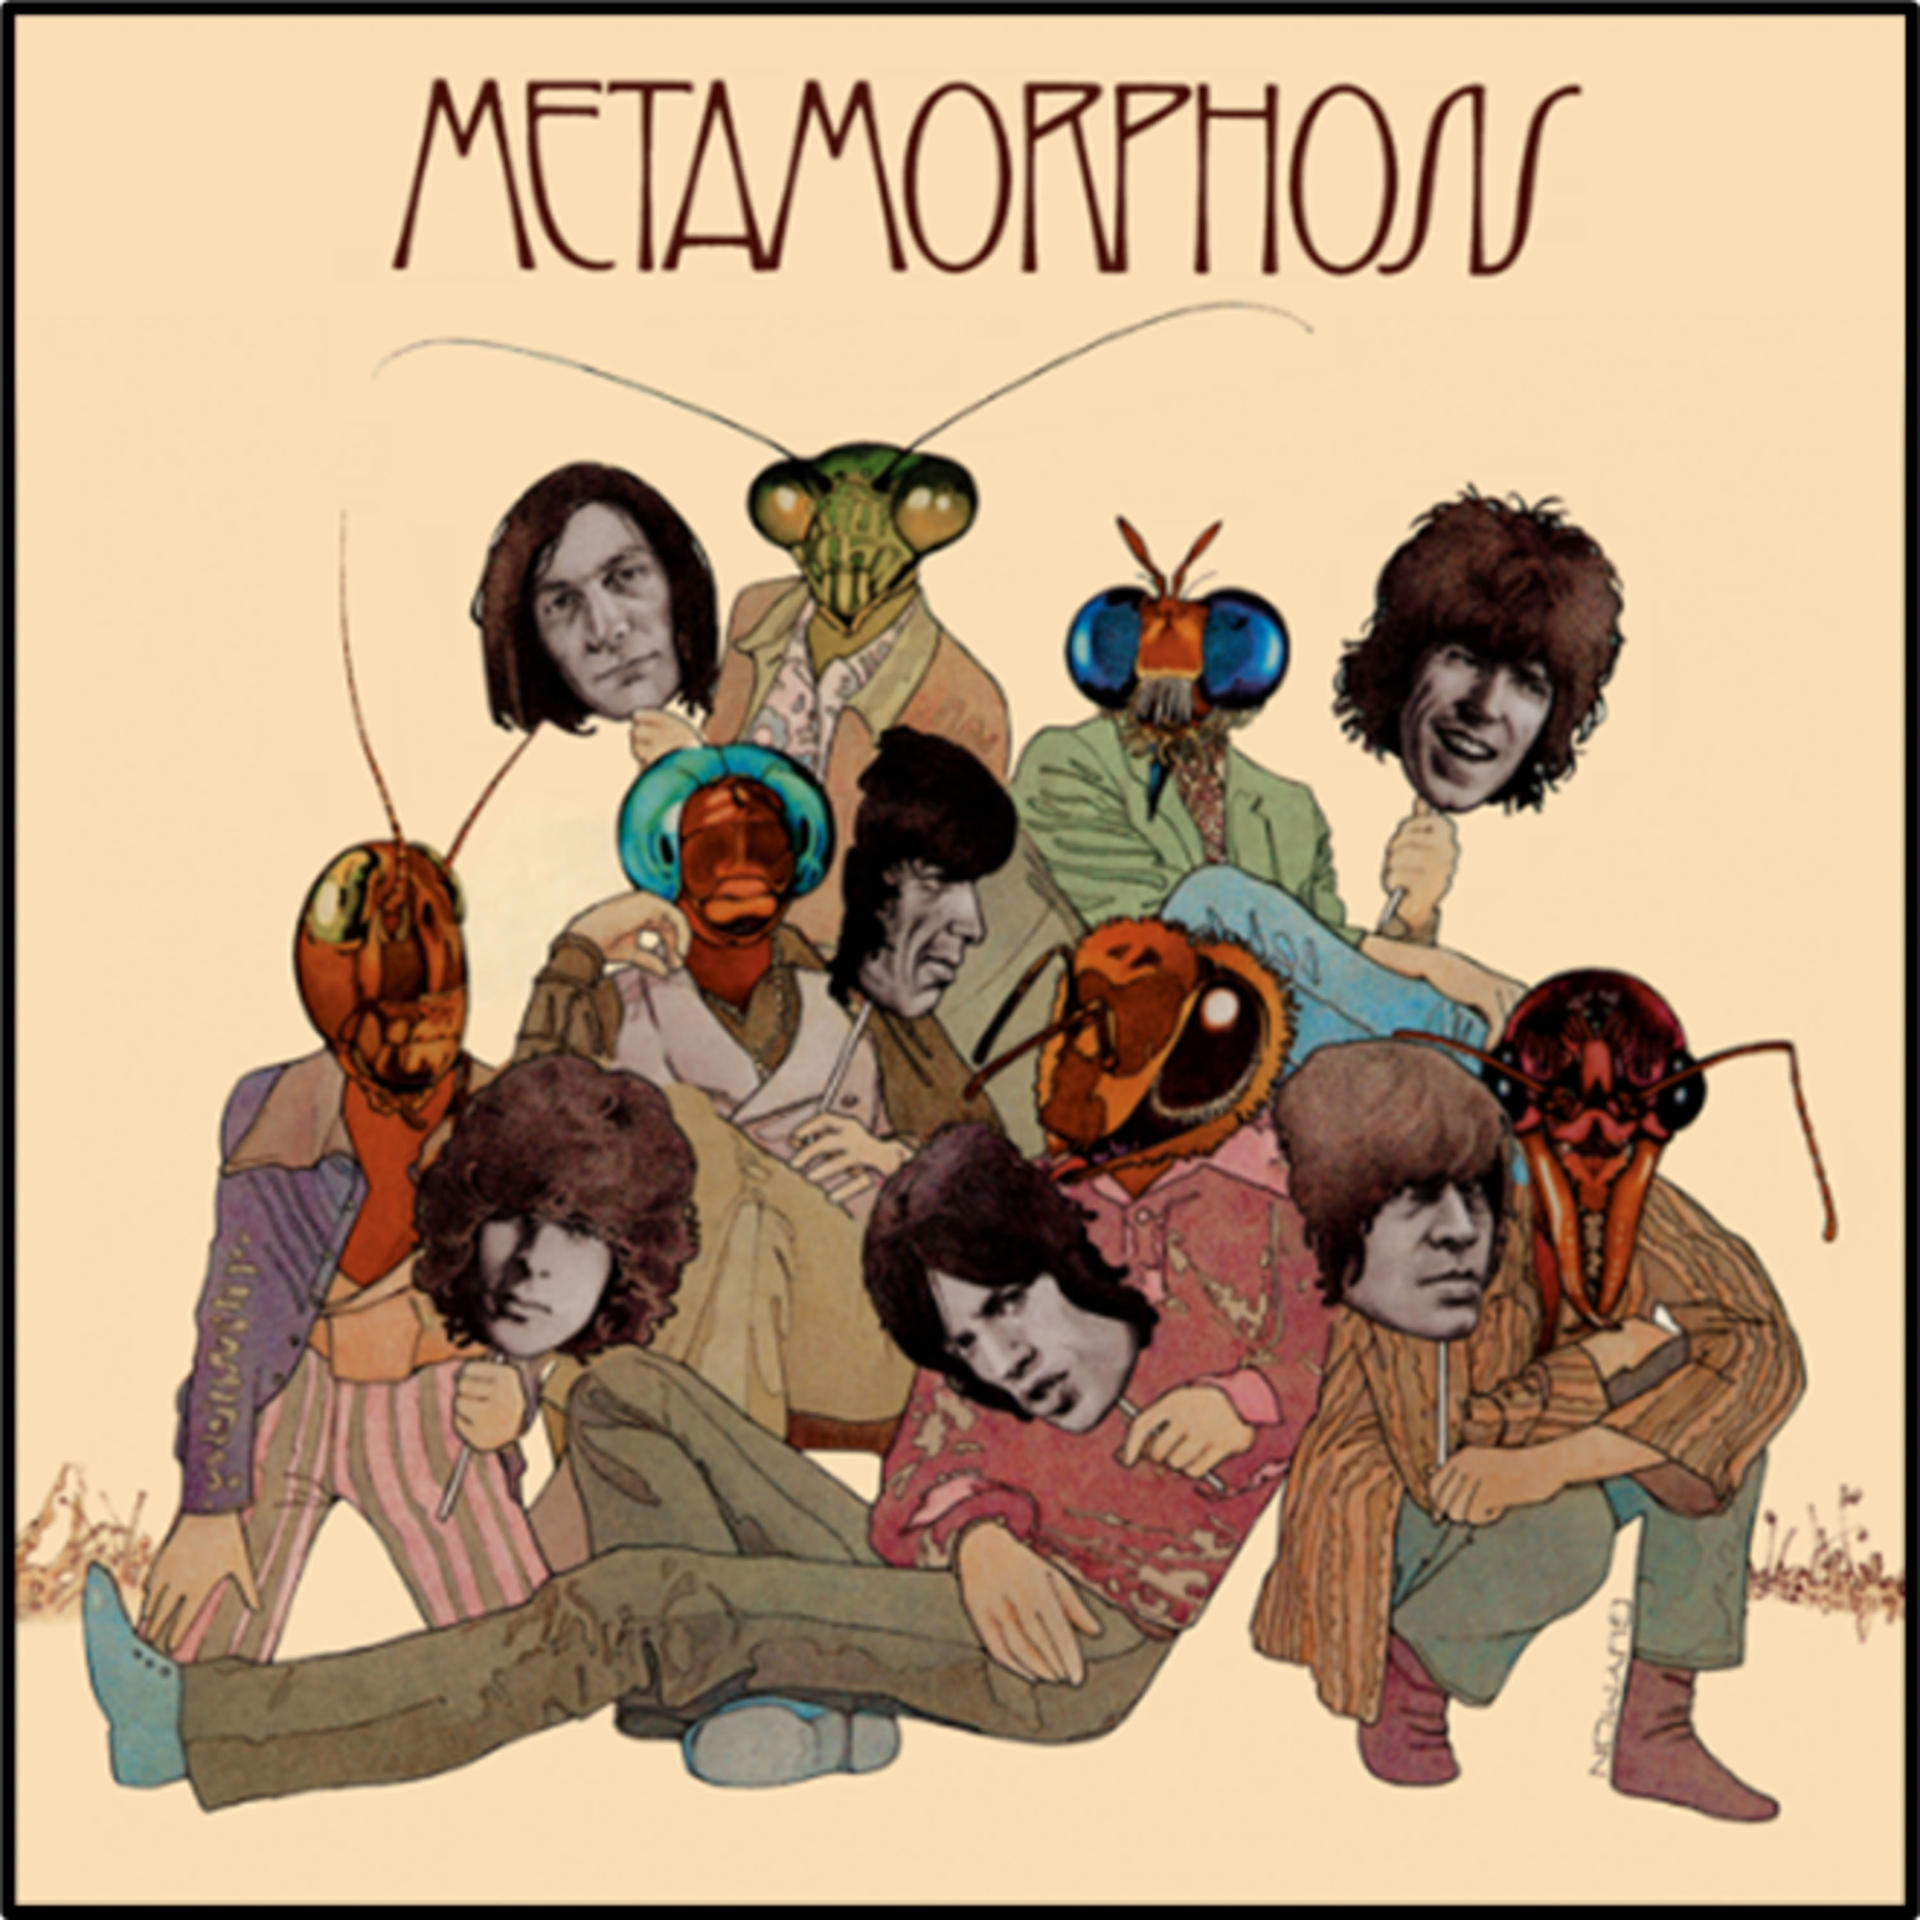 Rolling (Vinyl) The - - (Vinyl) Stones Metamorphosis